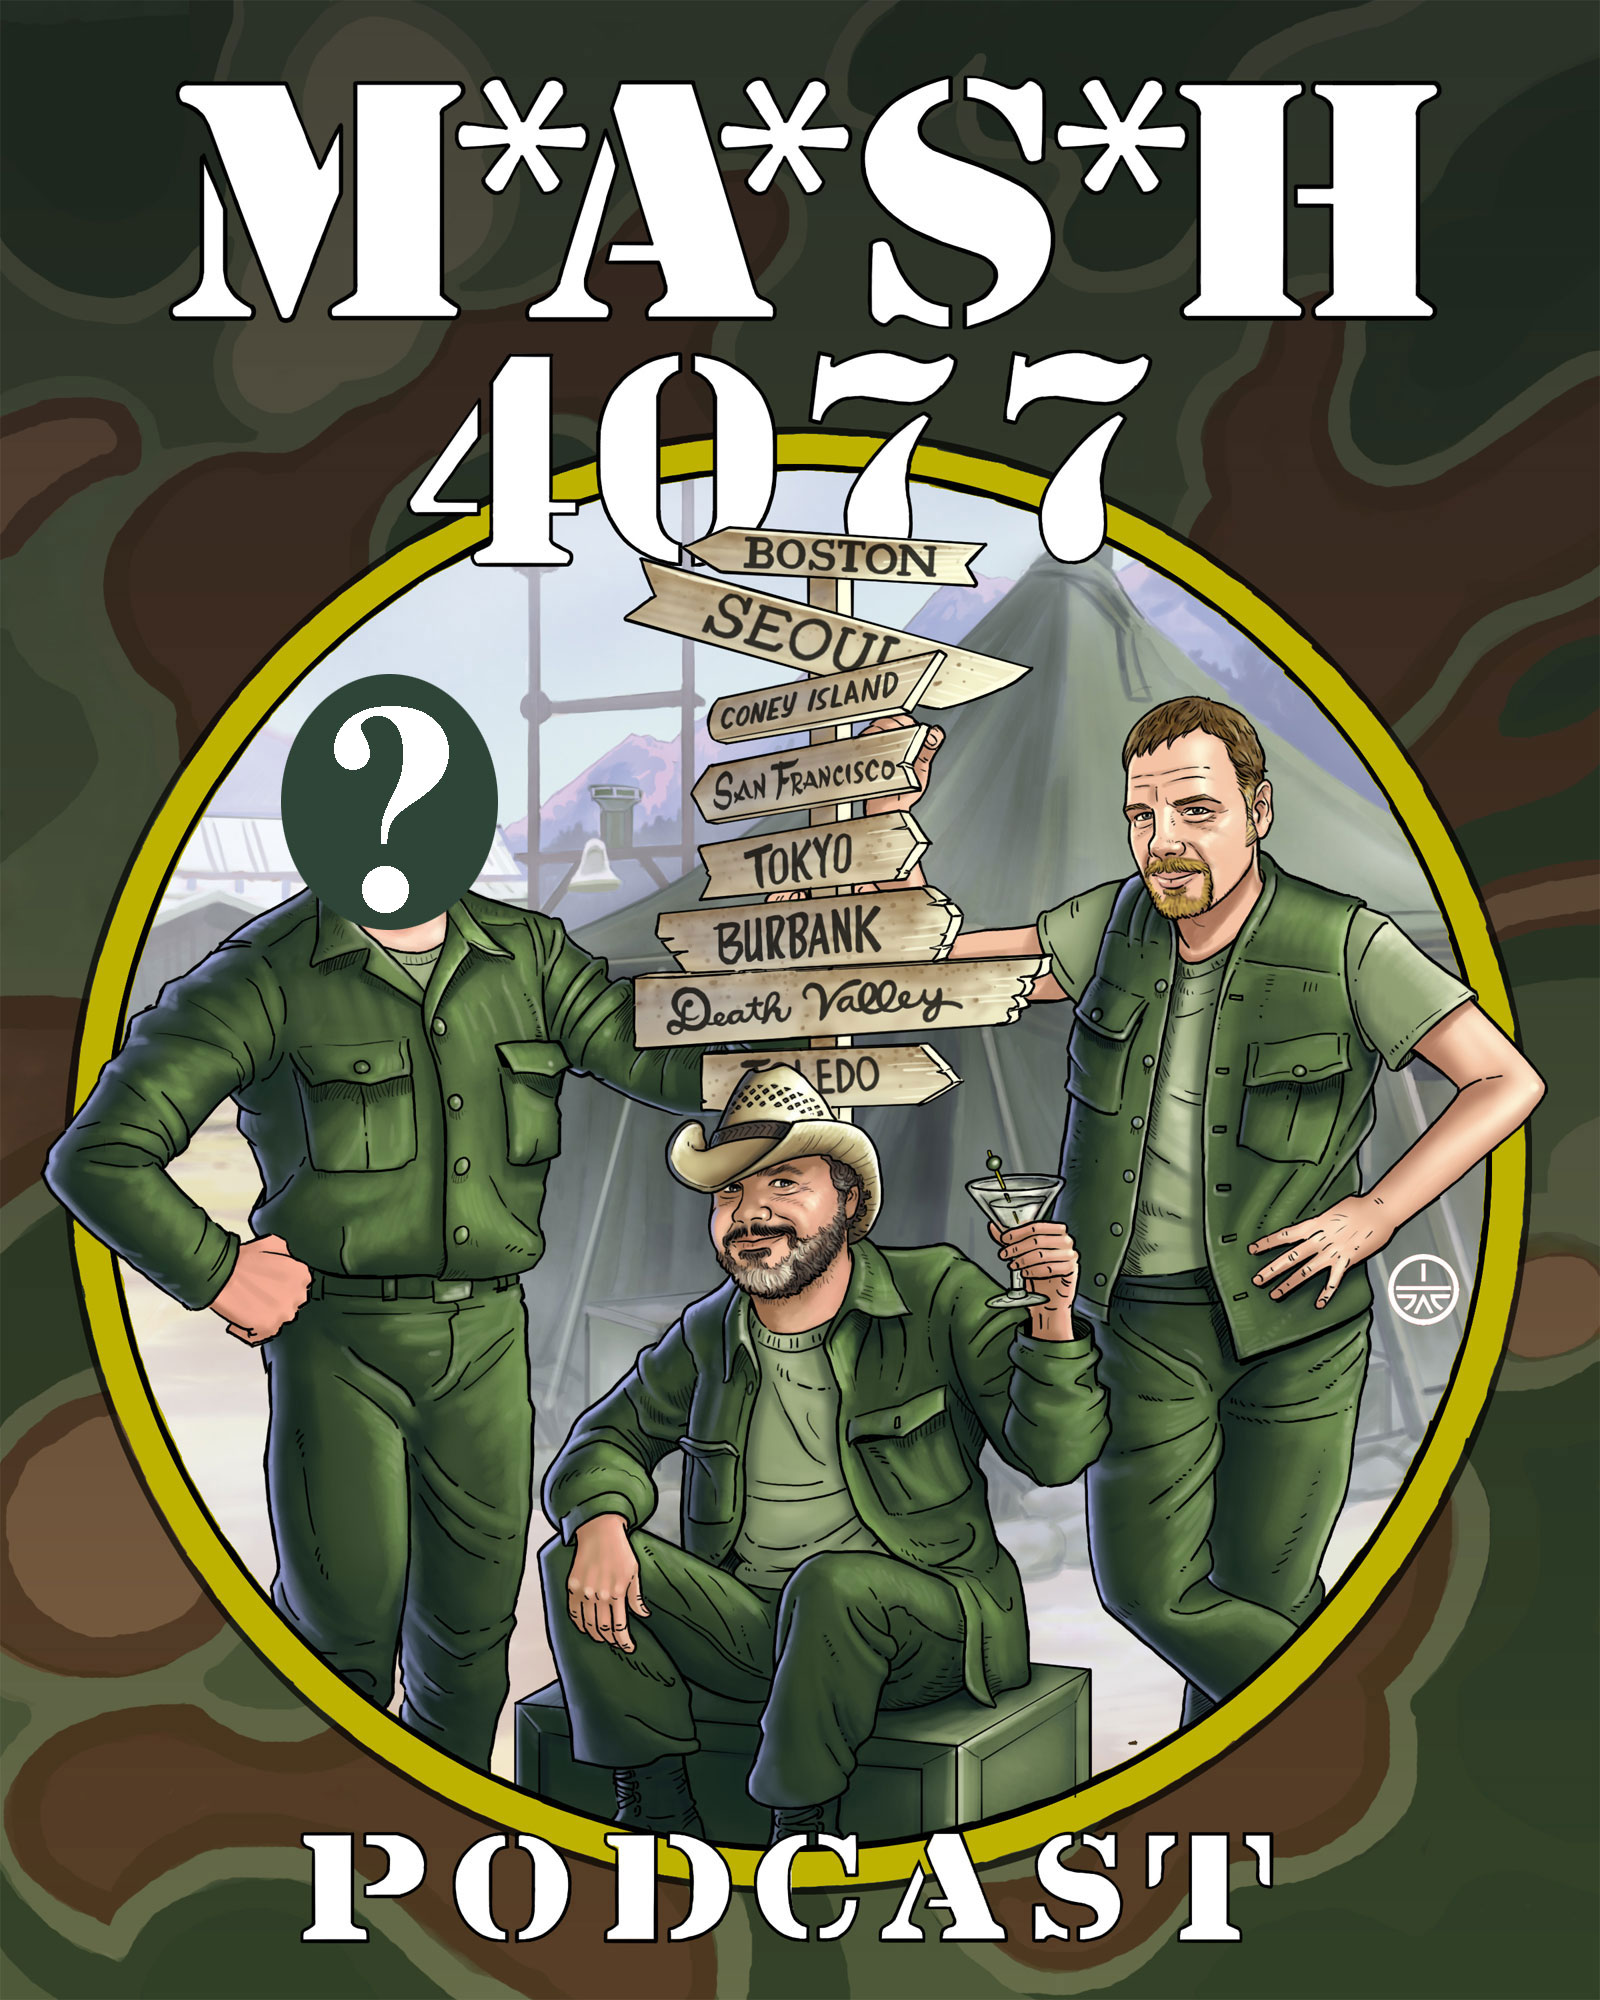 MASH 4077 Podcast Episode 149